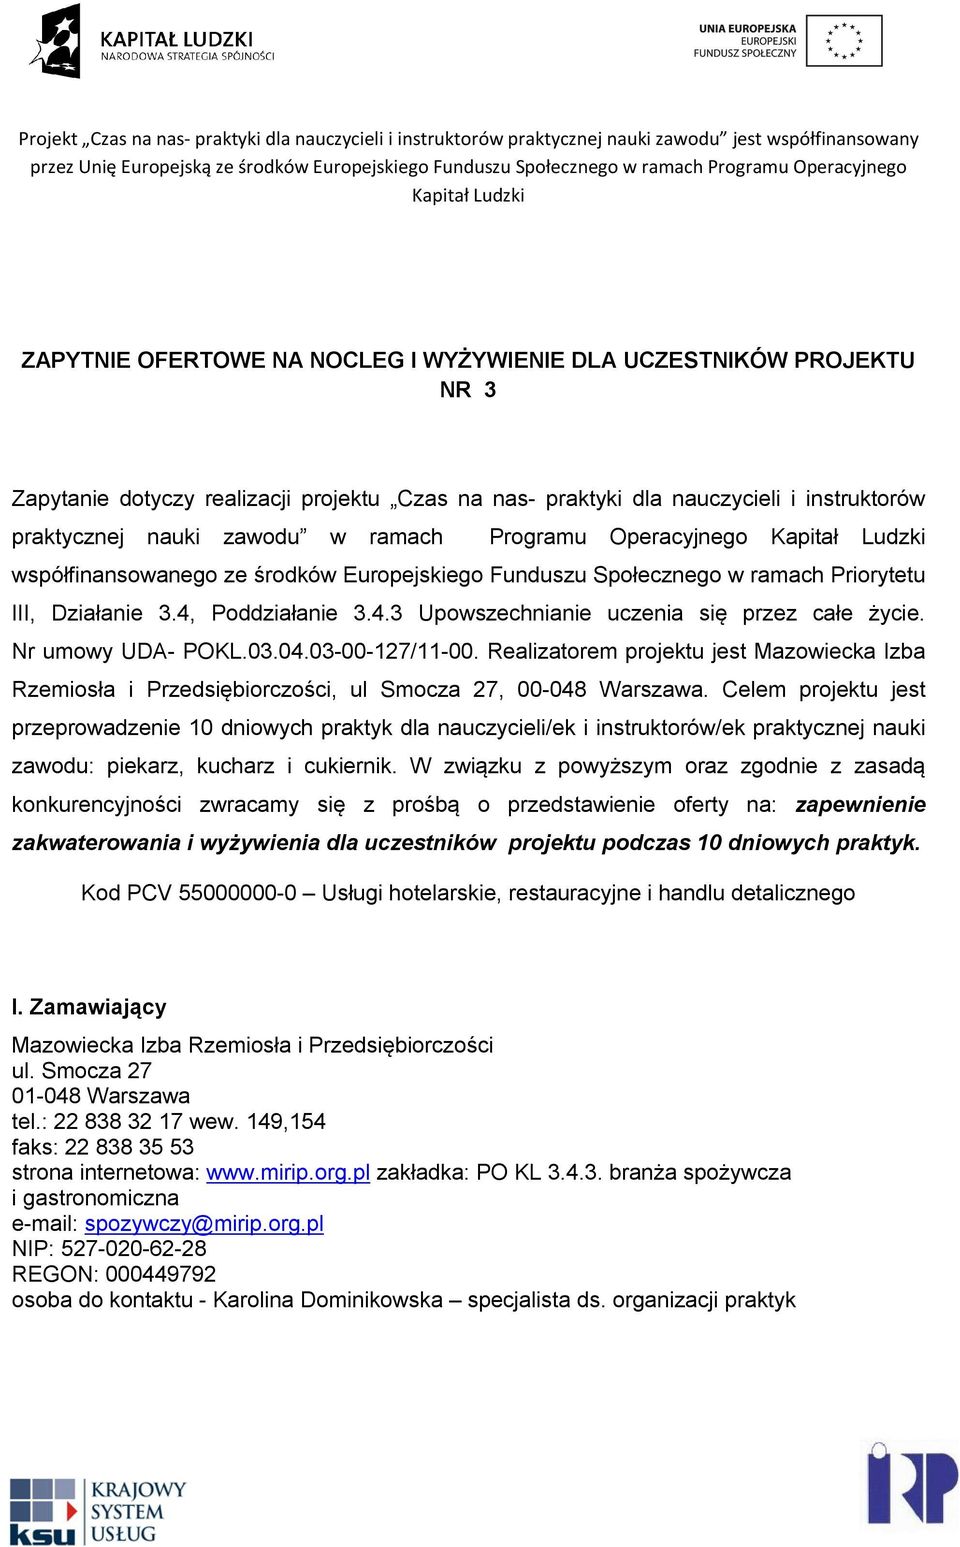 Nr umowy UDA- POKL.03.04.03-00-127/11-00. Realizatorem projektu jest Mazowiecka Izba Rzemiosła i Przedsiębiorczości, ul Smocza 27, 00-048 Warszawa.